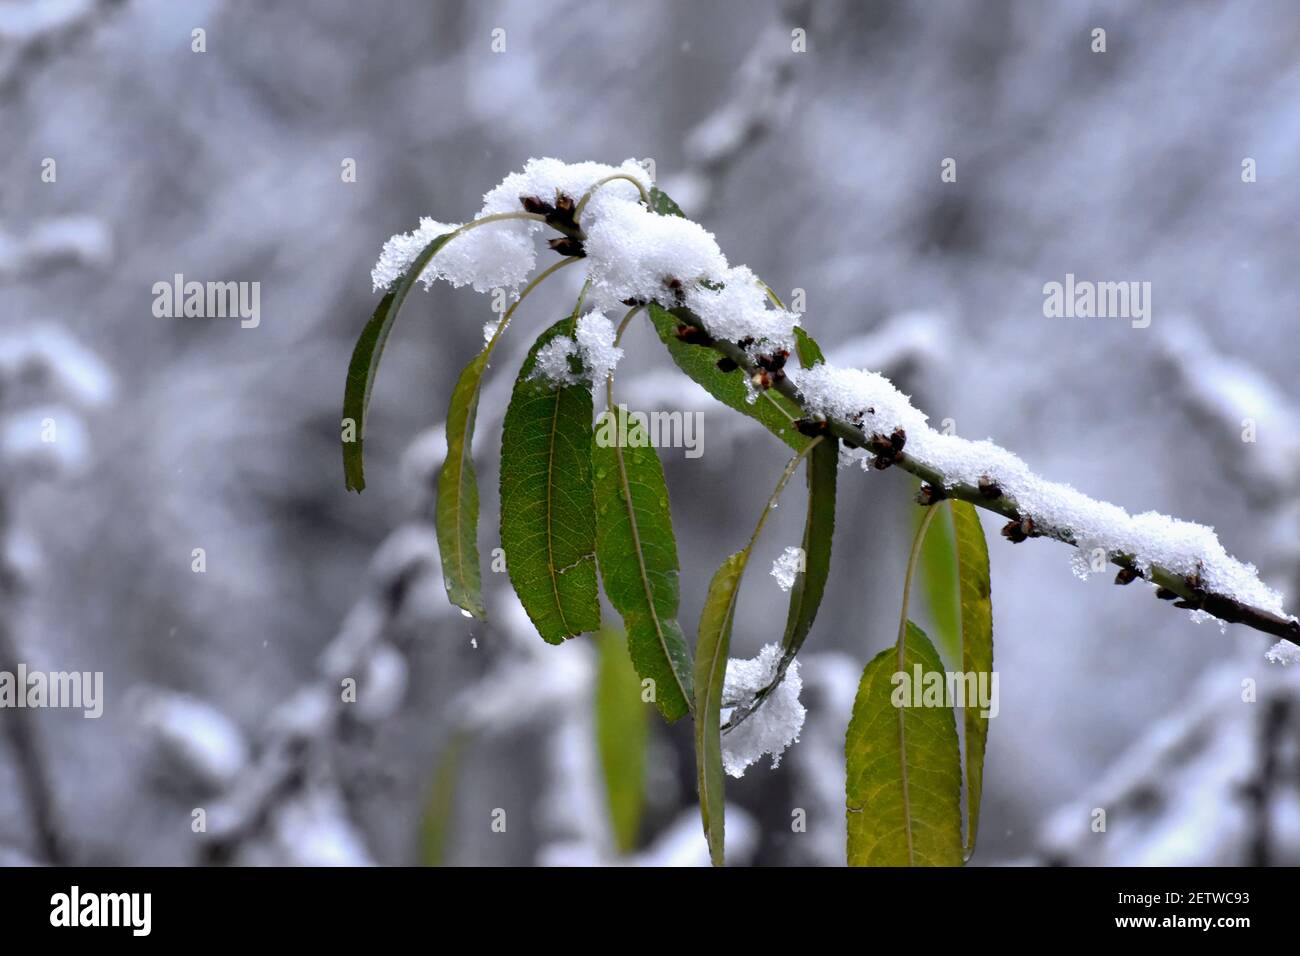 Feuilles pleines de neige. Feuilles d'amandiers couvertes de neige, dans la grande chute de neige de Madrid au passage de la tempête de neige Filomenta par l'Espagne Banque D'Images